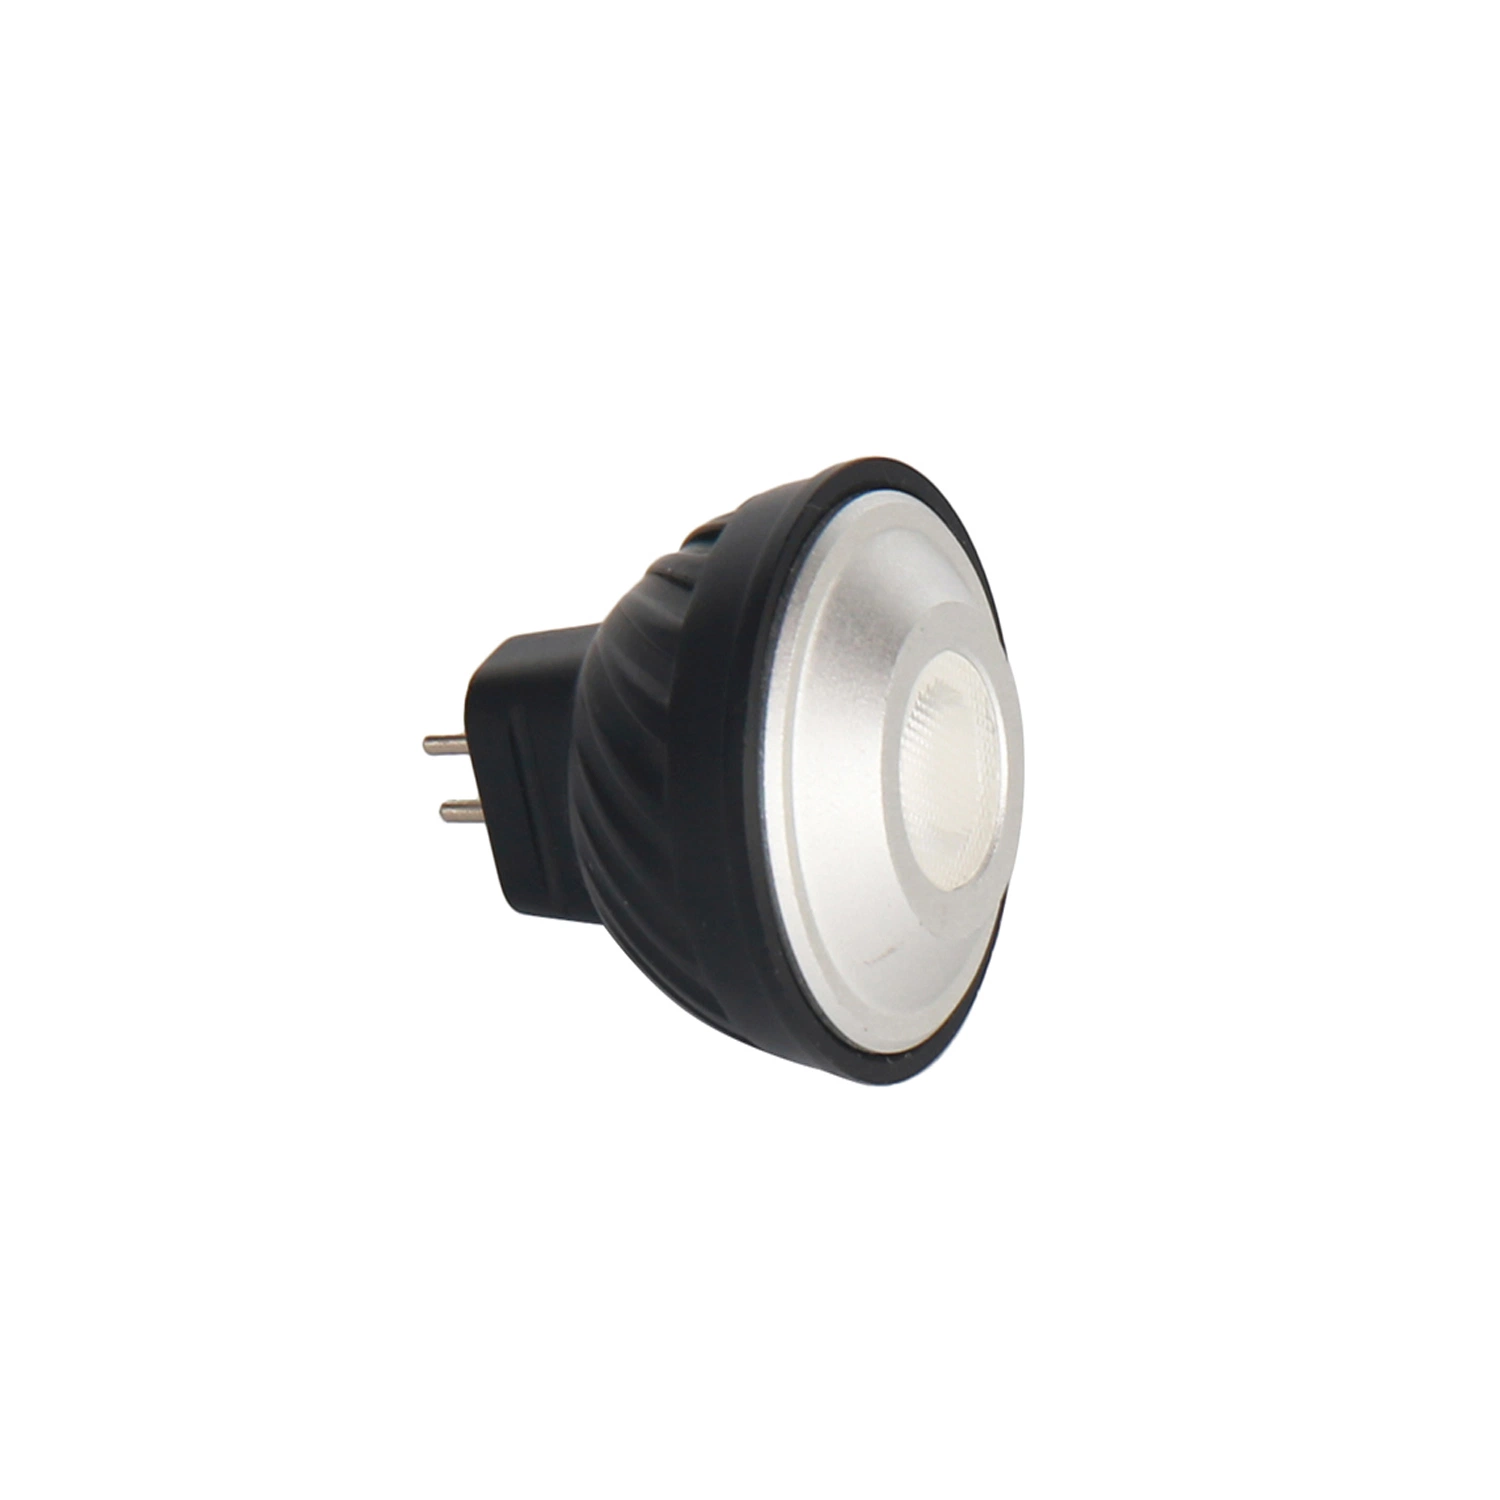 LED Light Bulb MR11 Lamp for Landscape Lighting